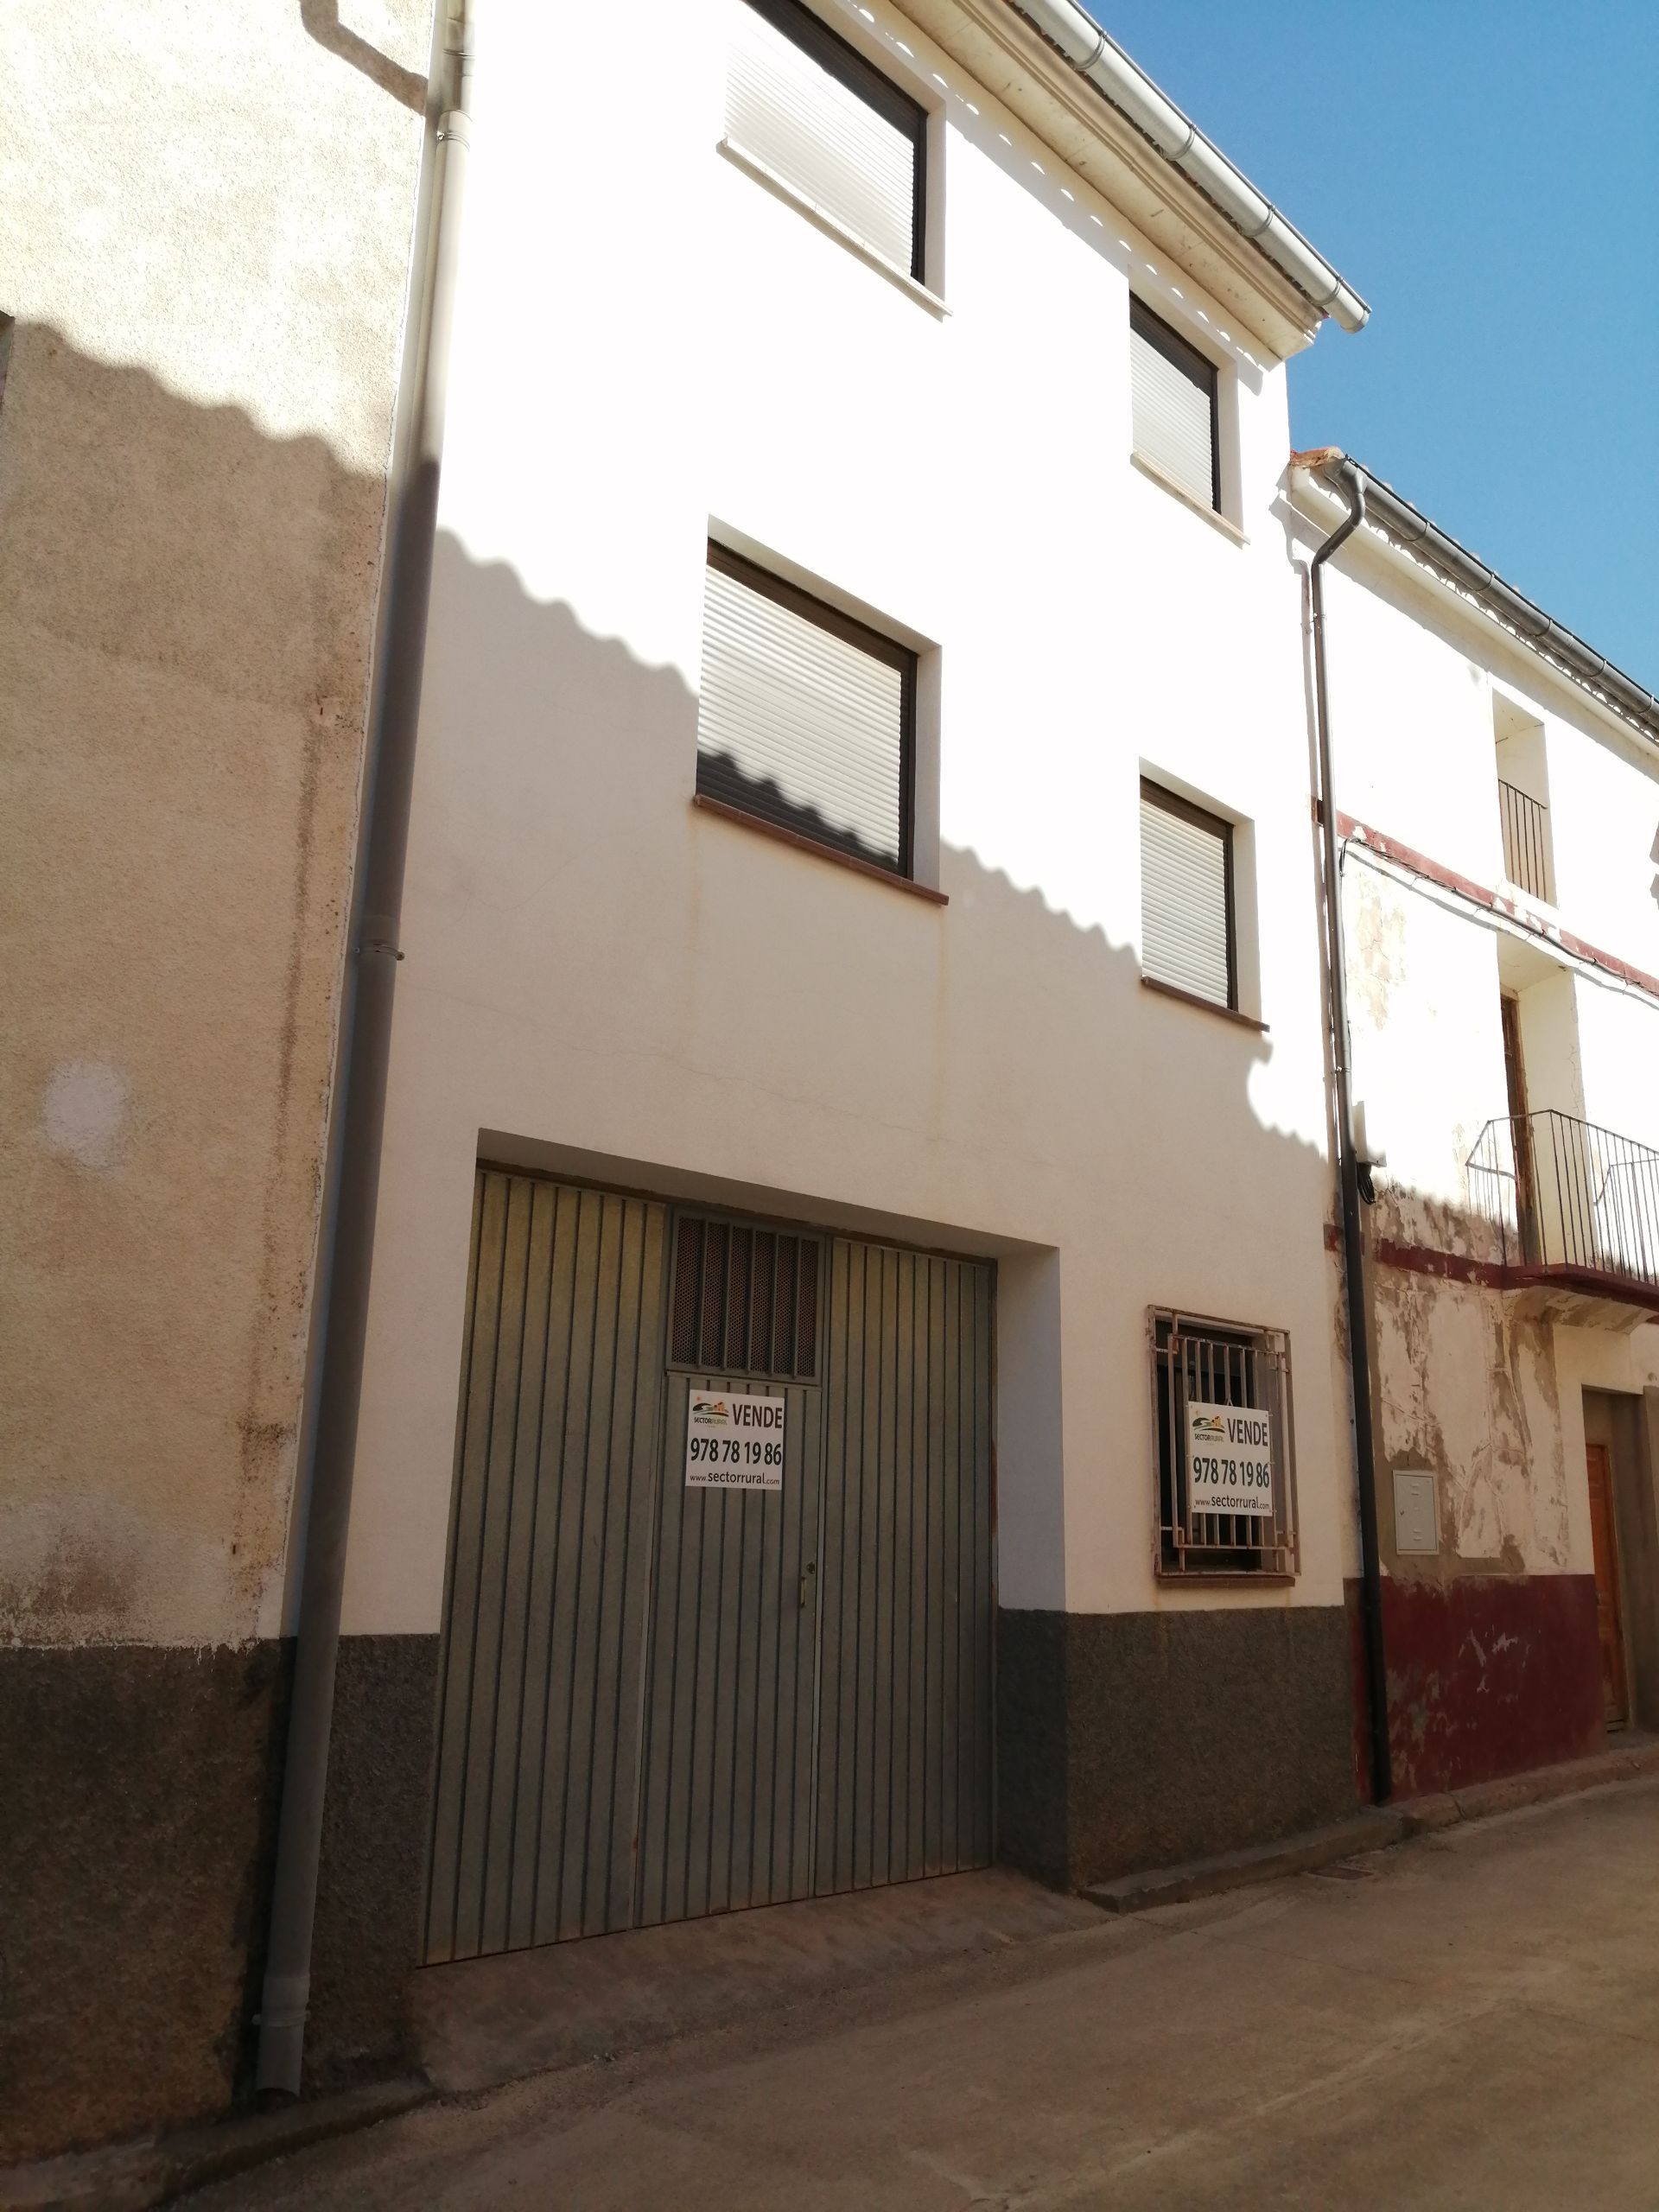 Casa de pueblo en Castielfabib, Rincon de Ademuz, venta